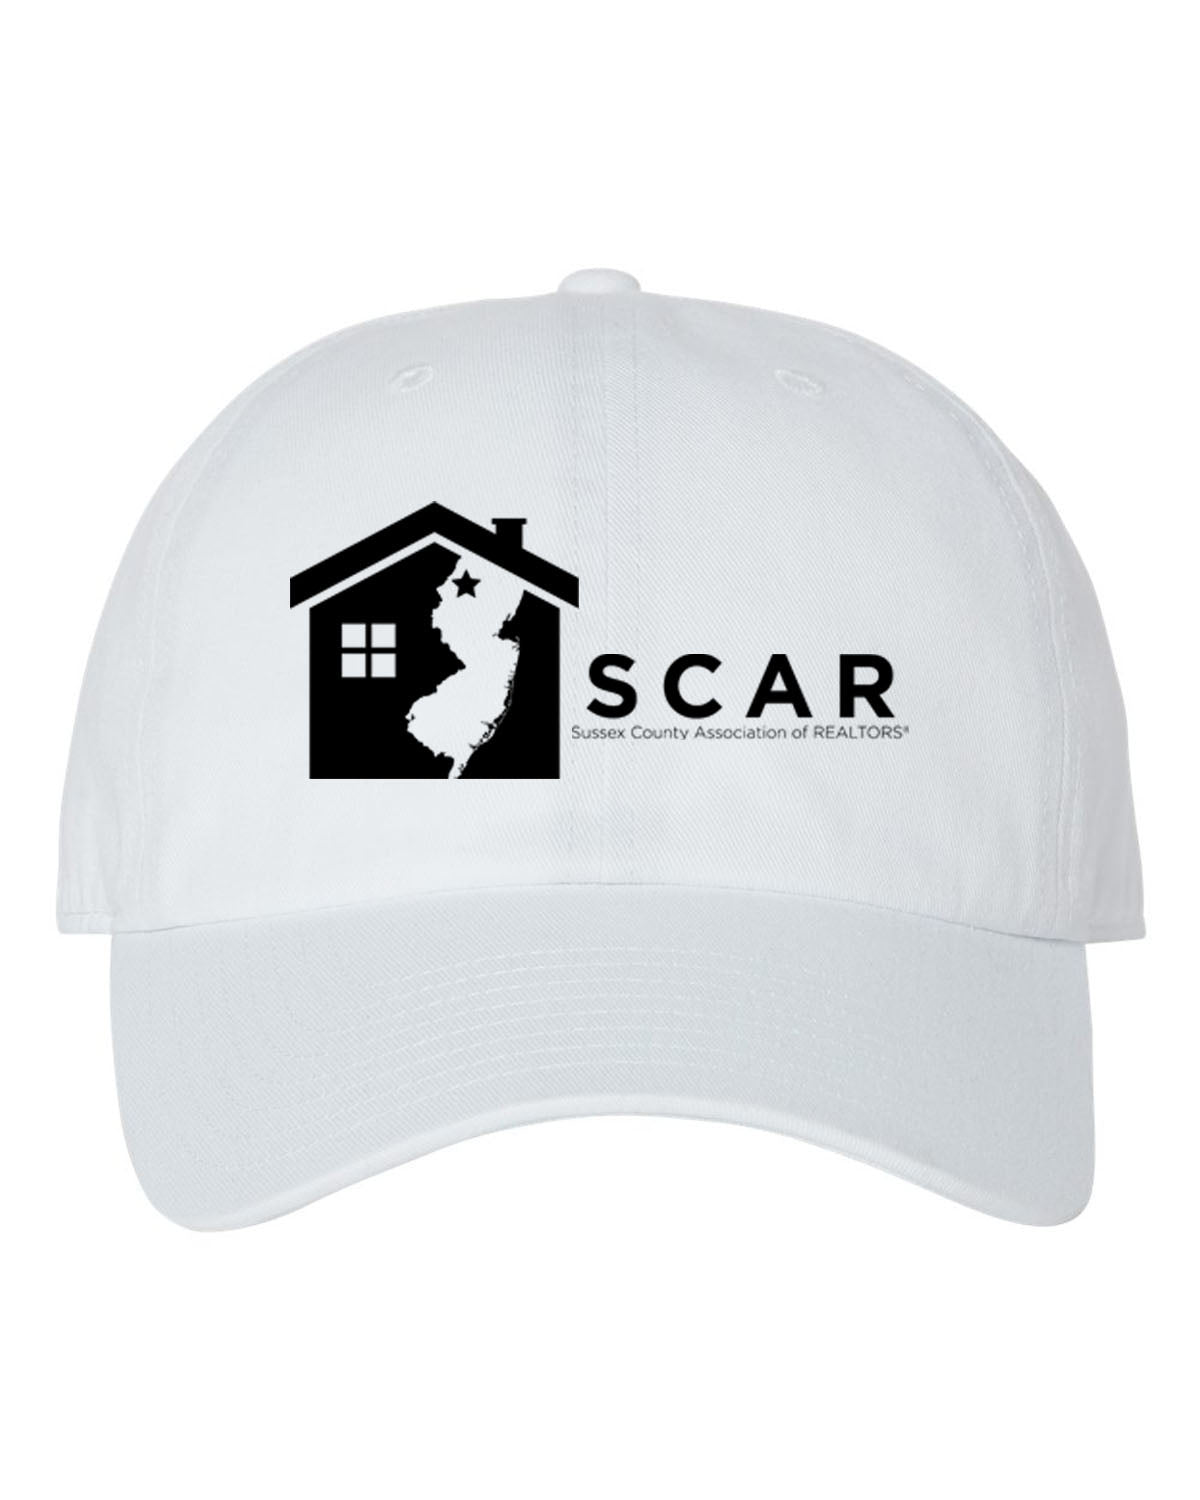 SCAR Design 2 Trucker Hat